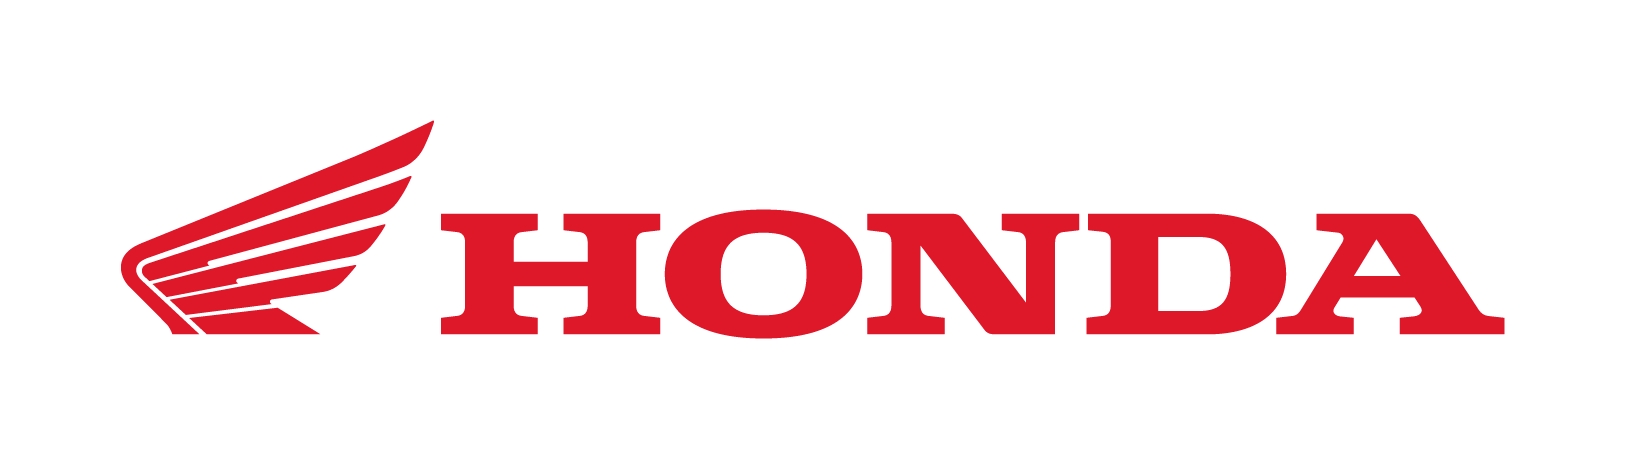 Pusat Penjualan Motor Honda Demak